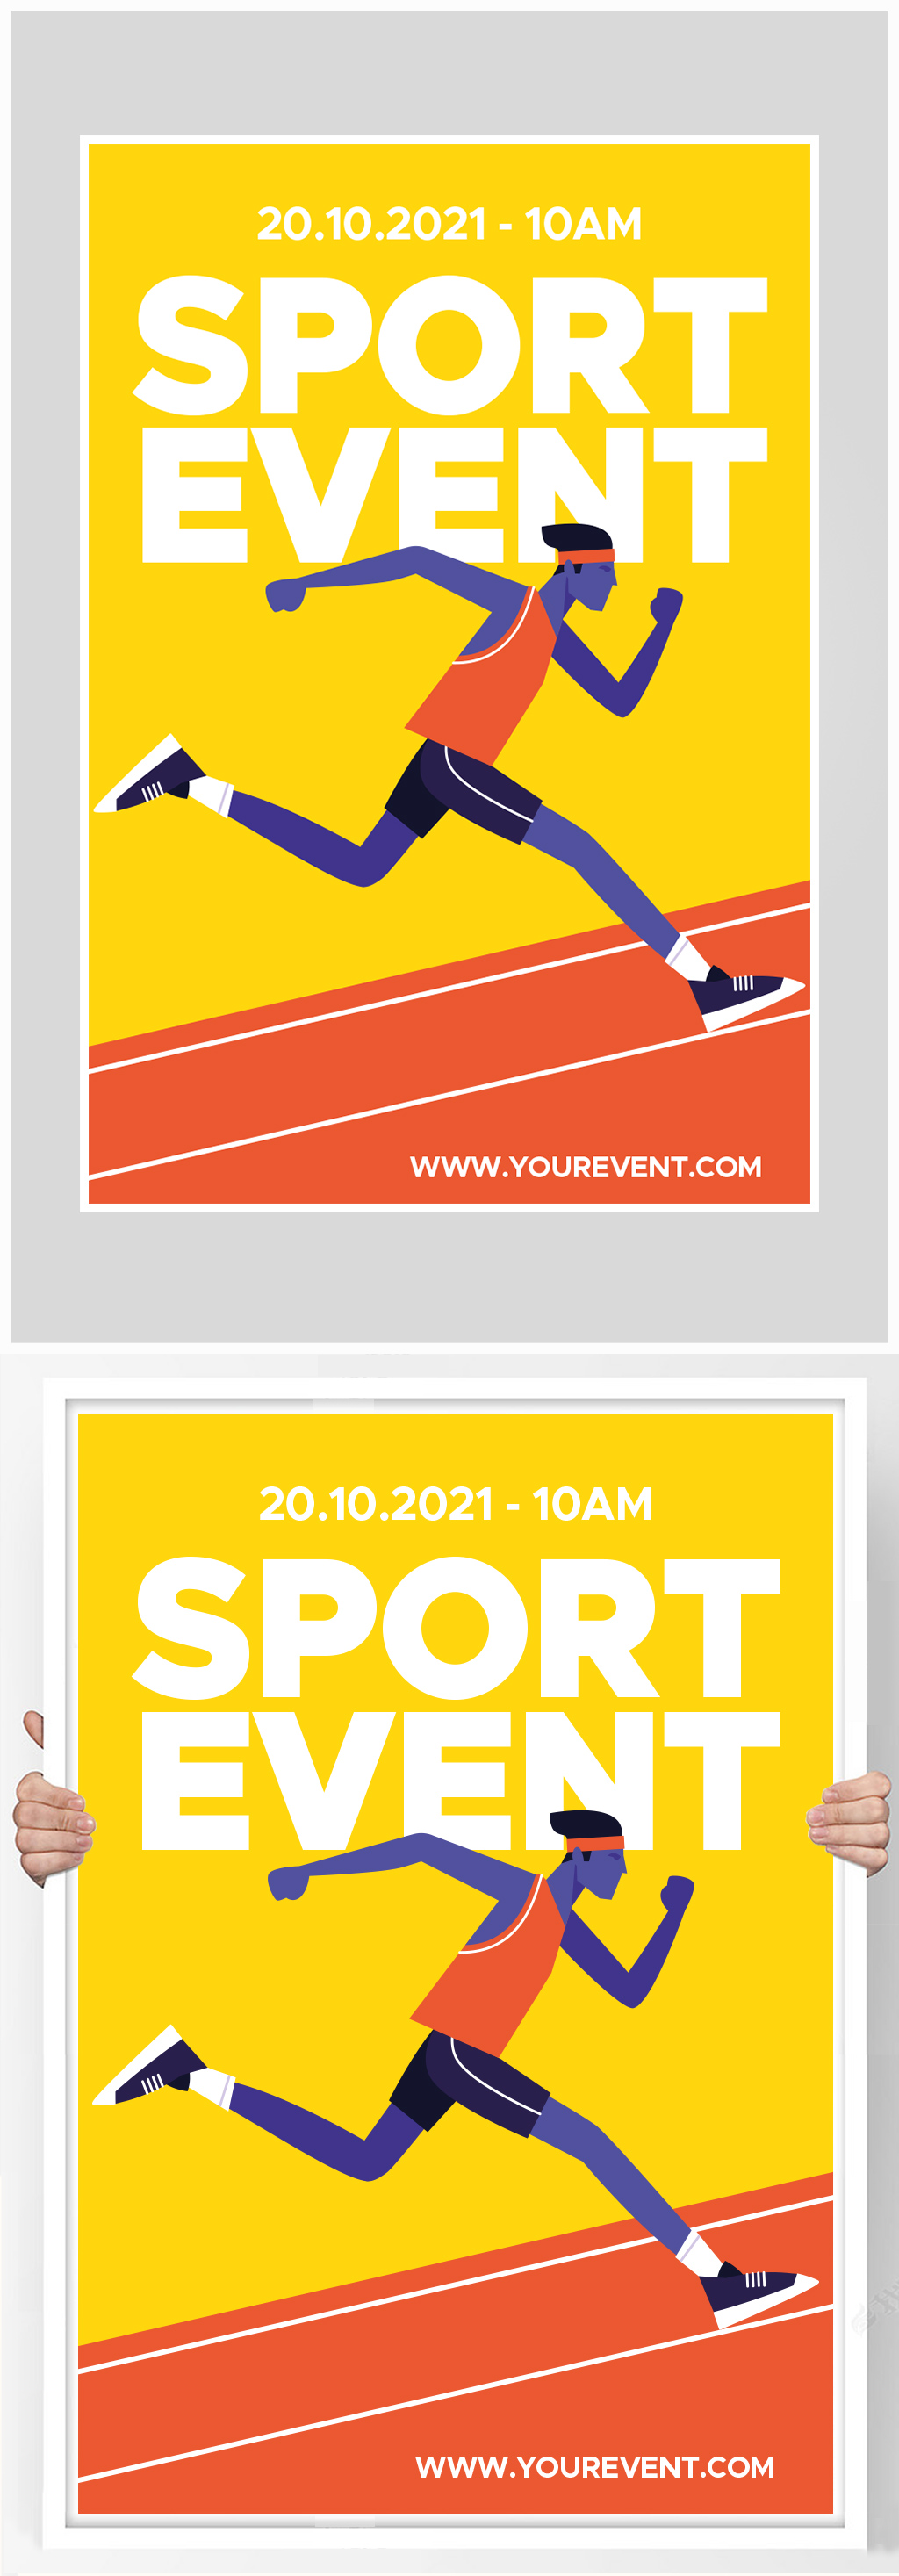 创意简约扁平化体育赛事海报设计